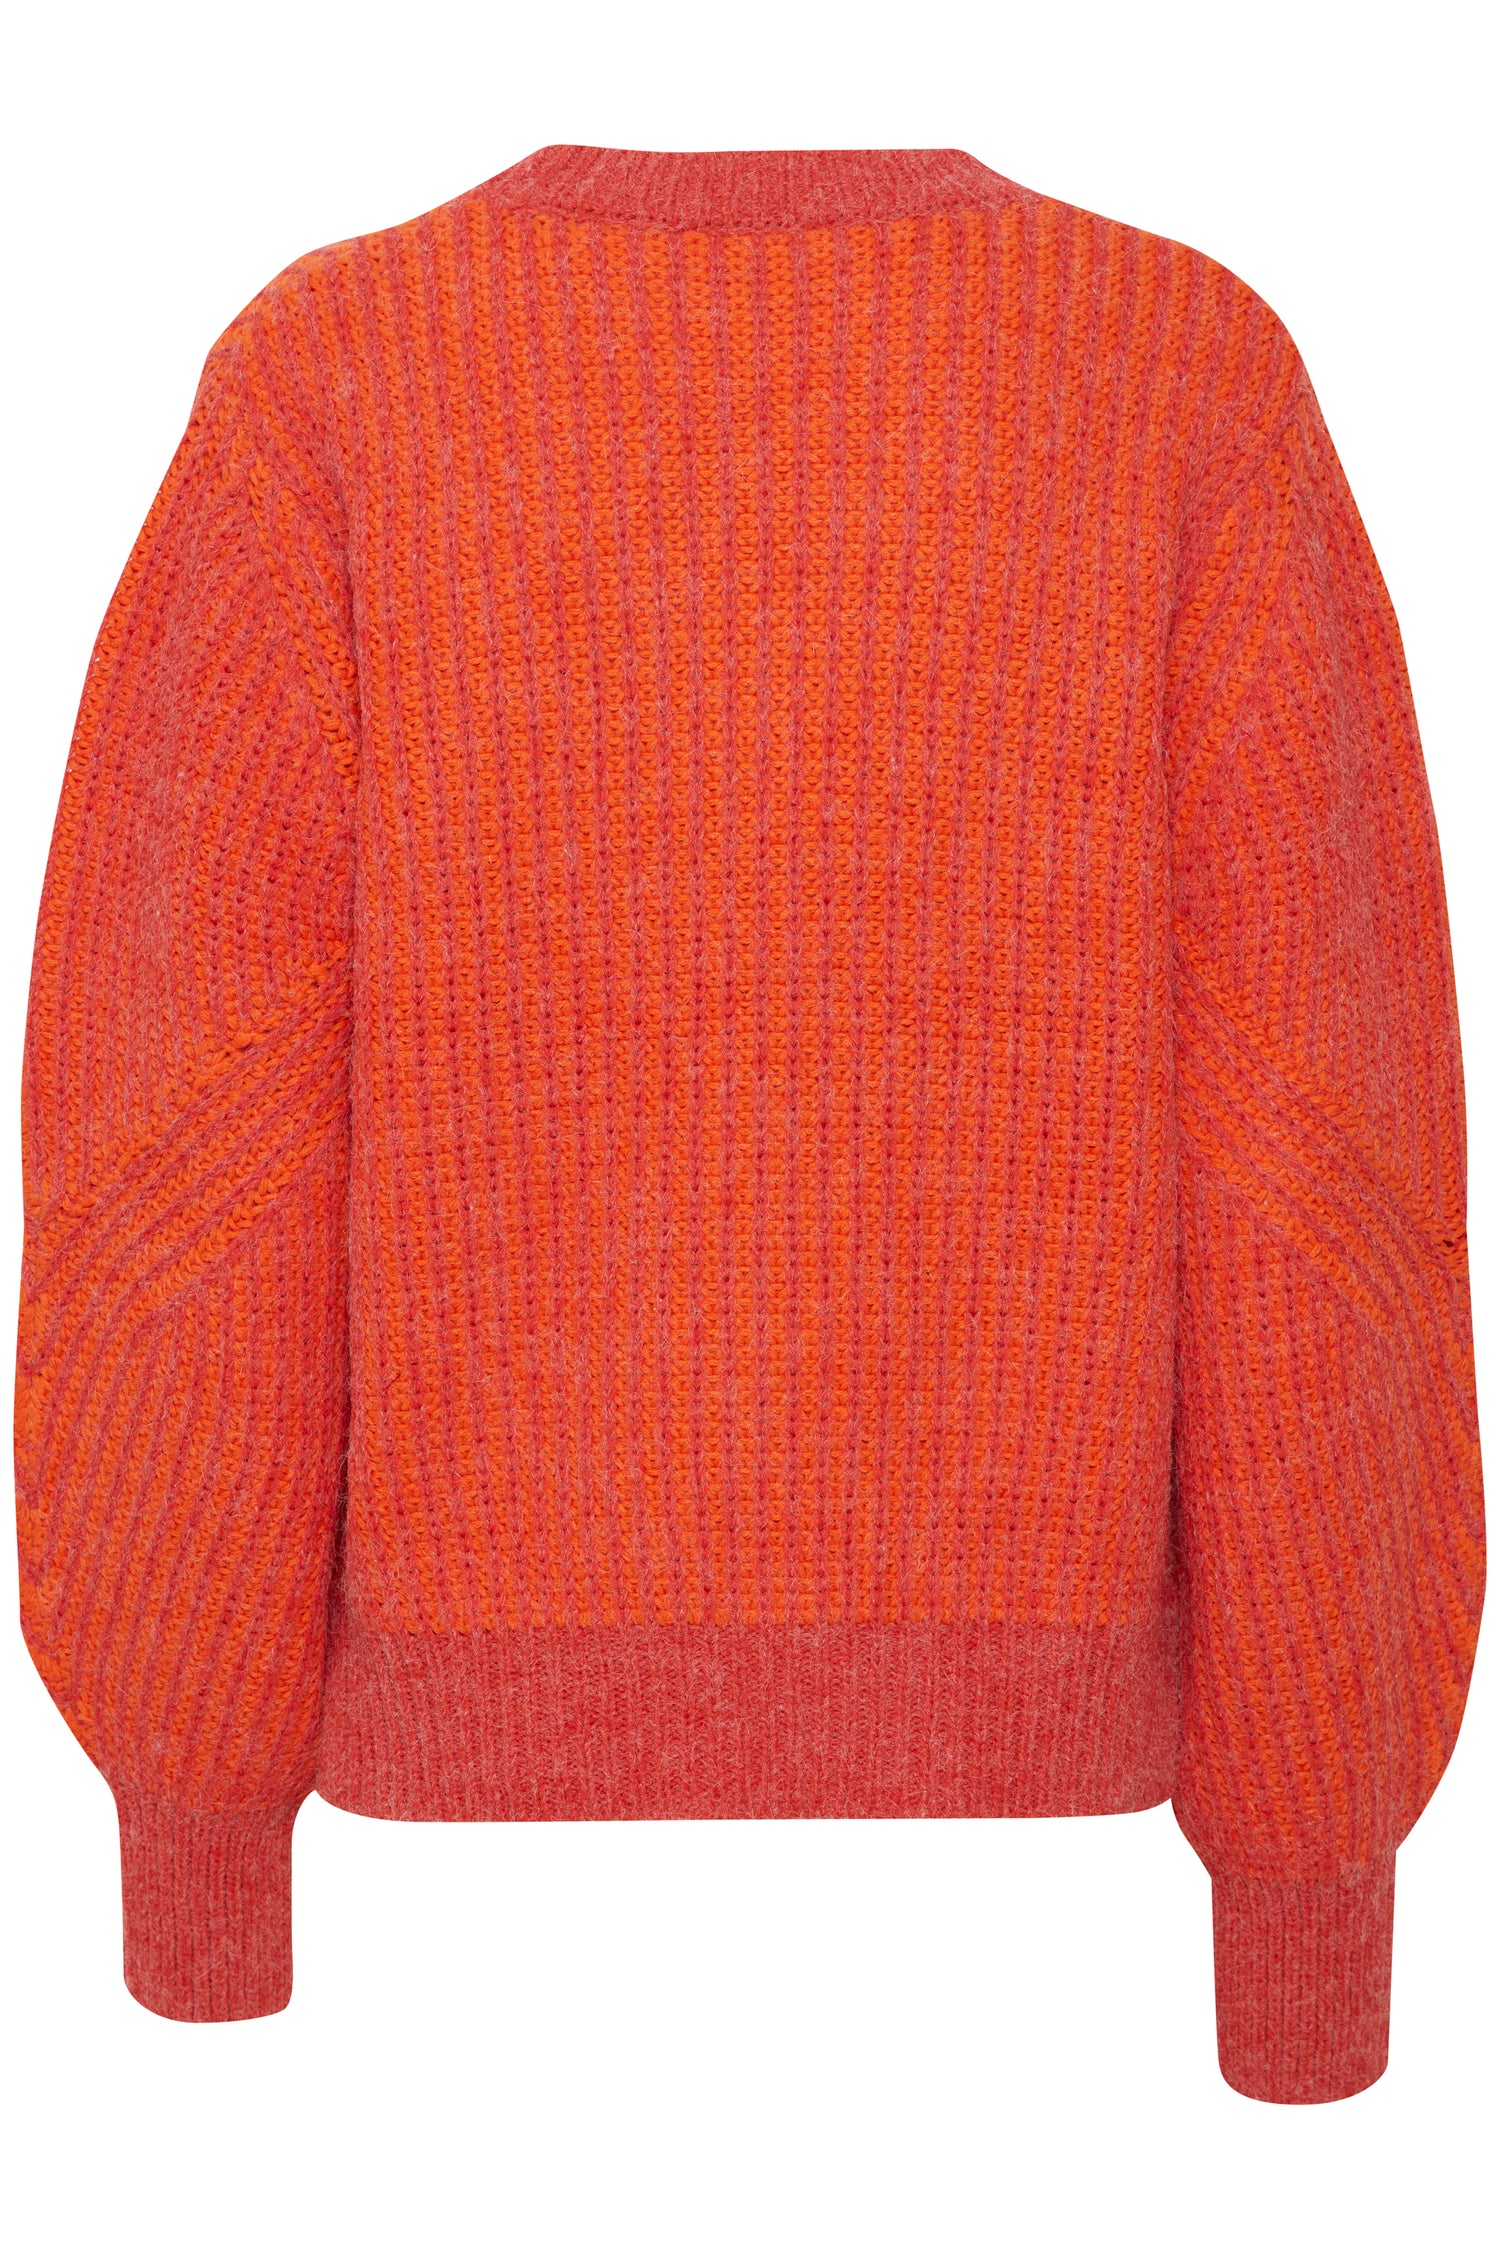 B. Young Millox SweaterB. Young Millox Sweater